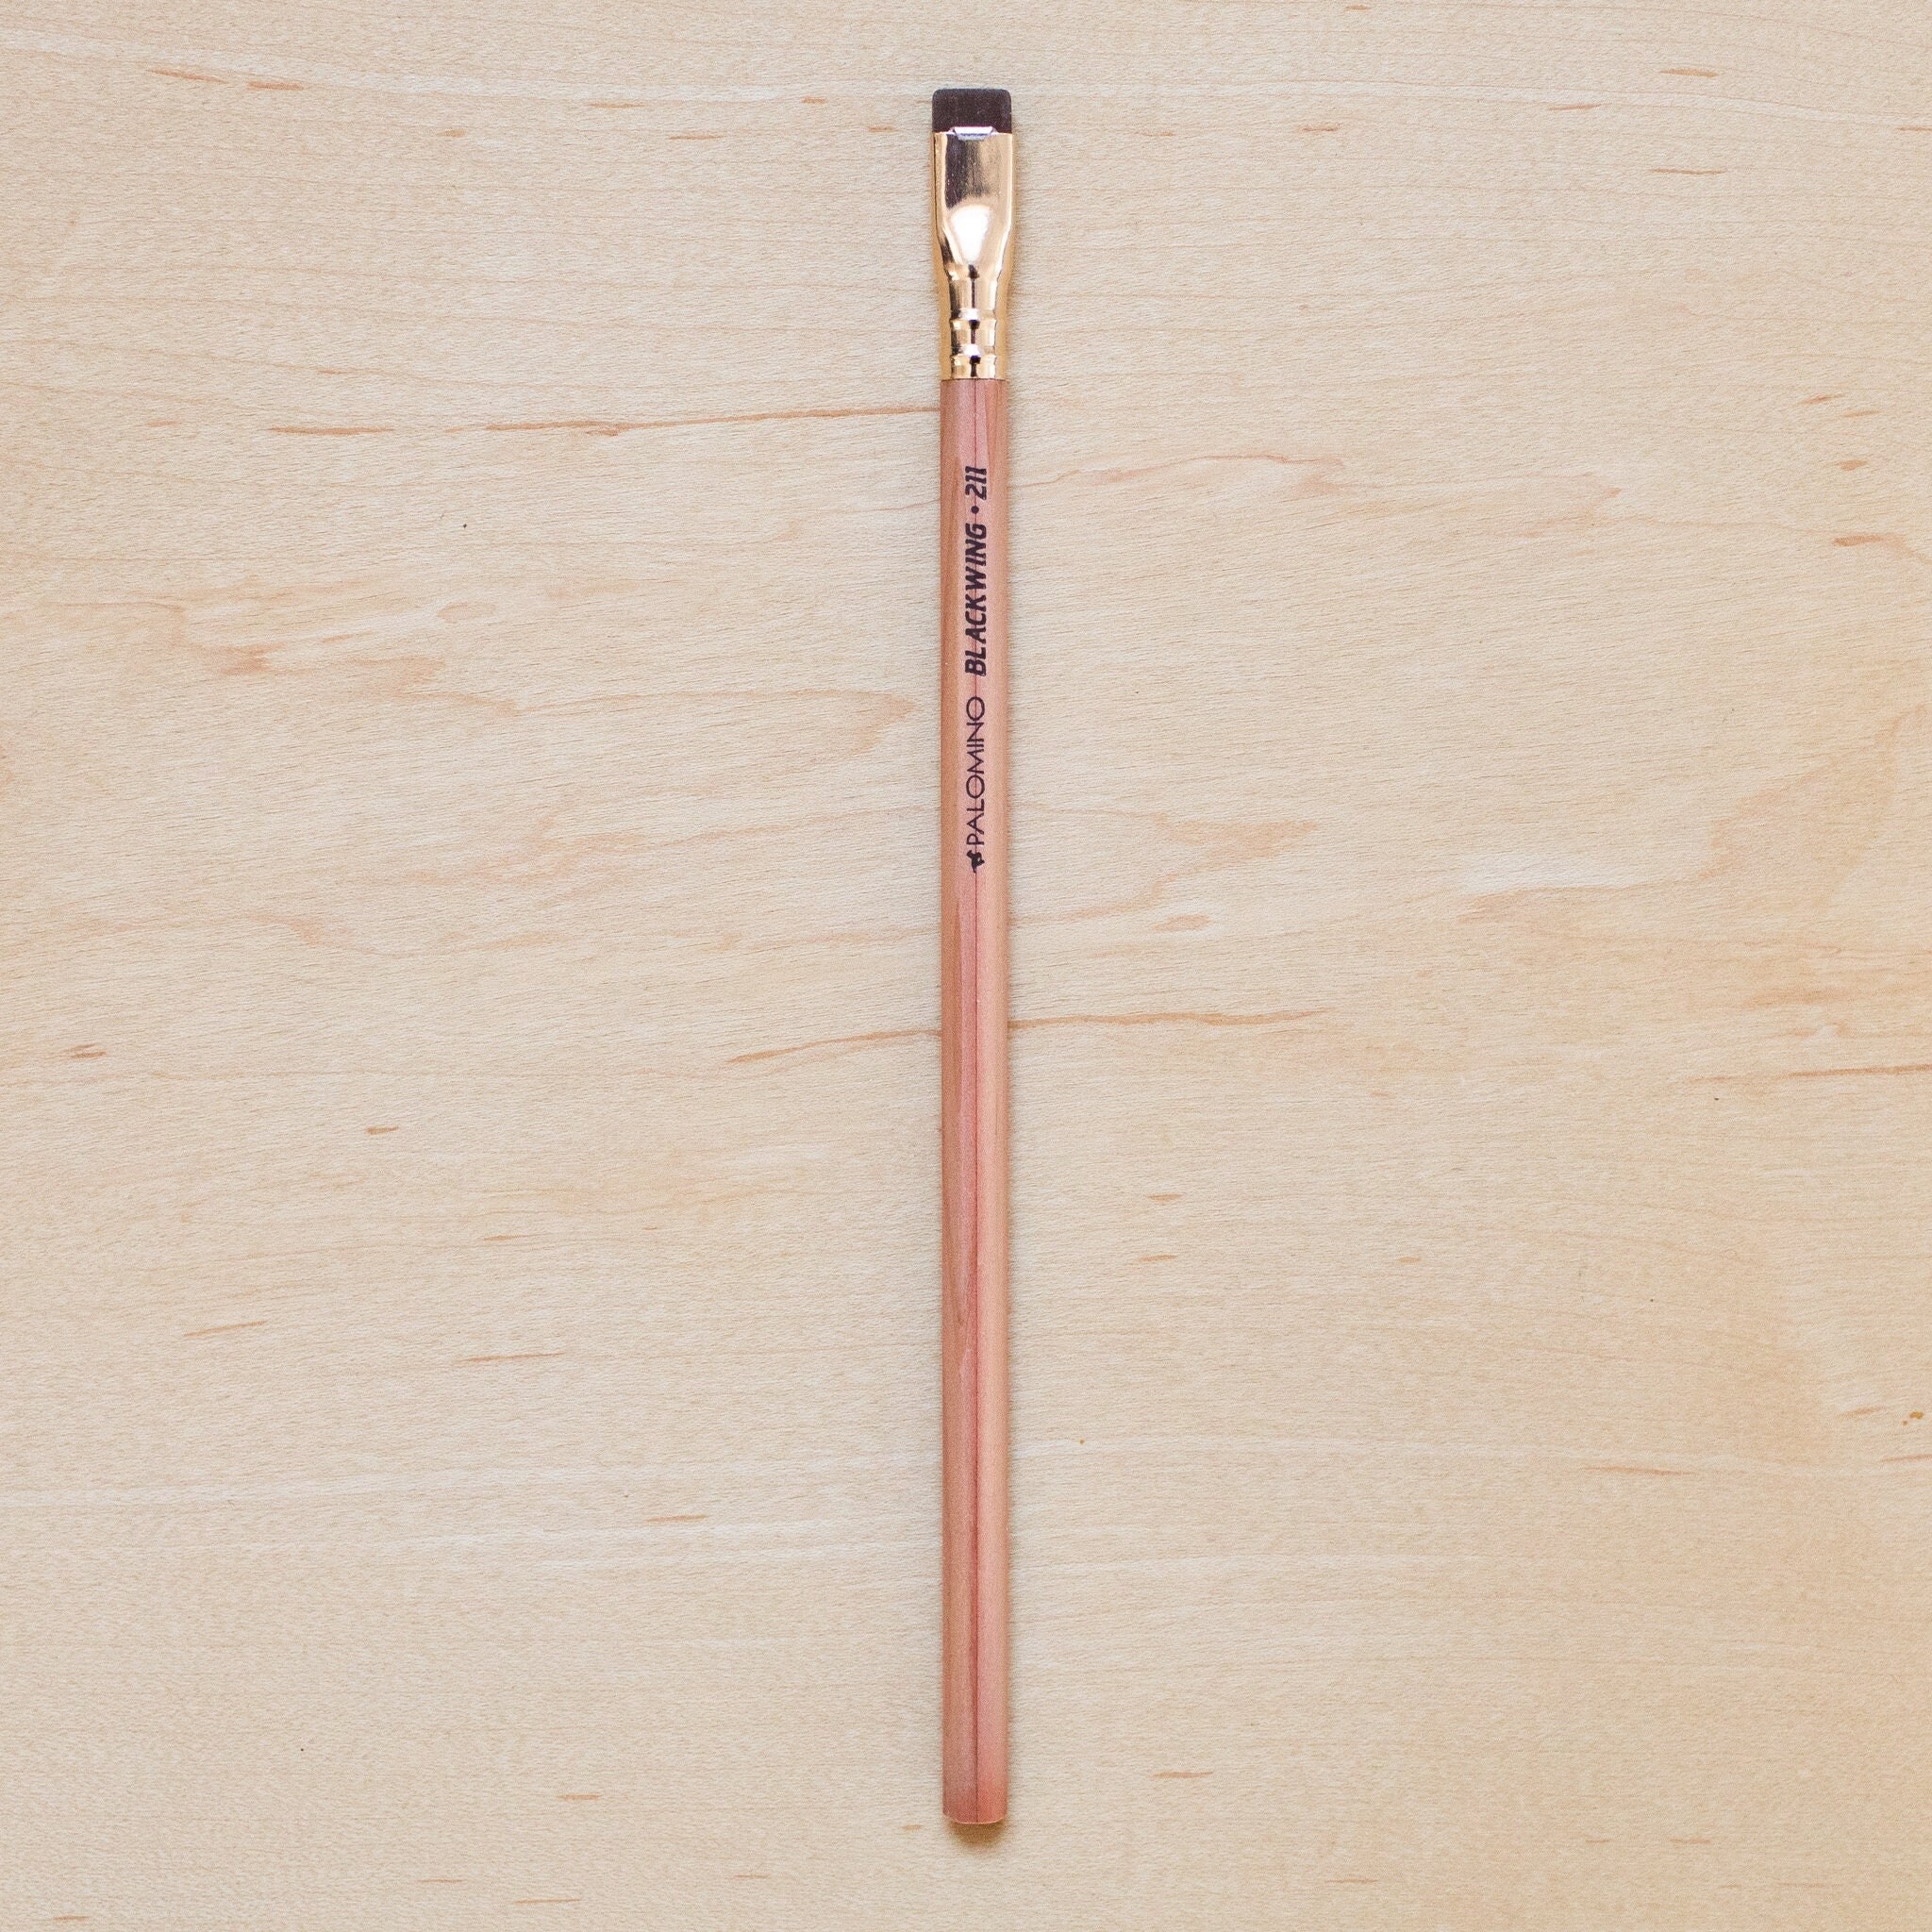 Blackwing Sampler Pack. 5 Pencils MMX, Pearl, 602, Natural, Volume